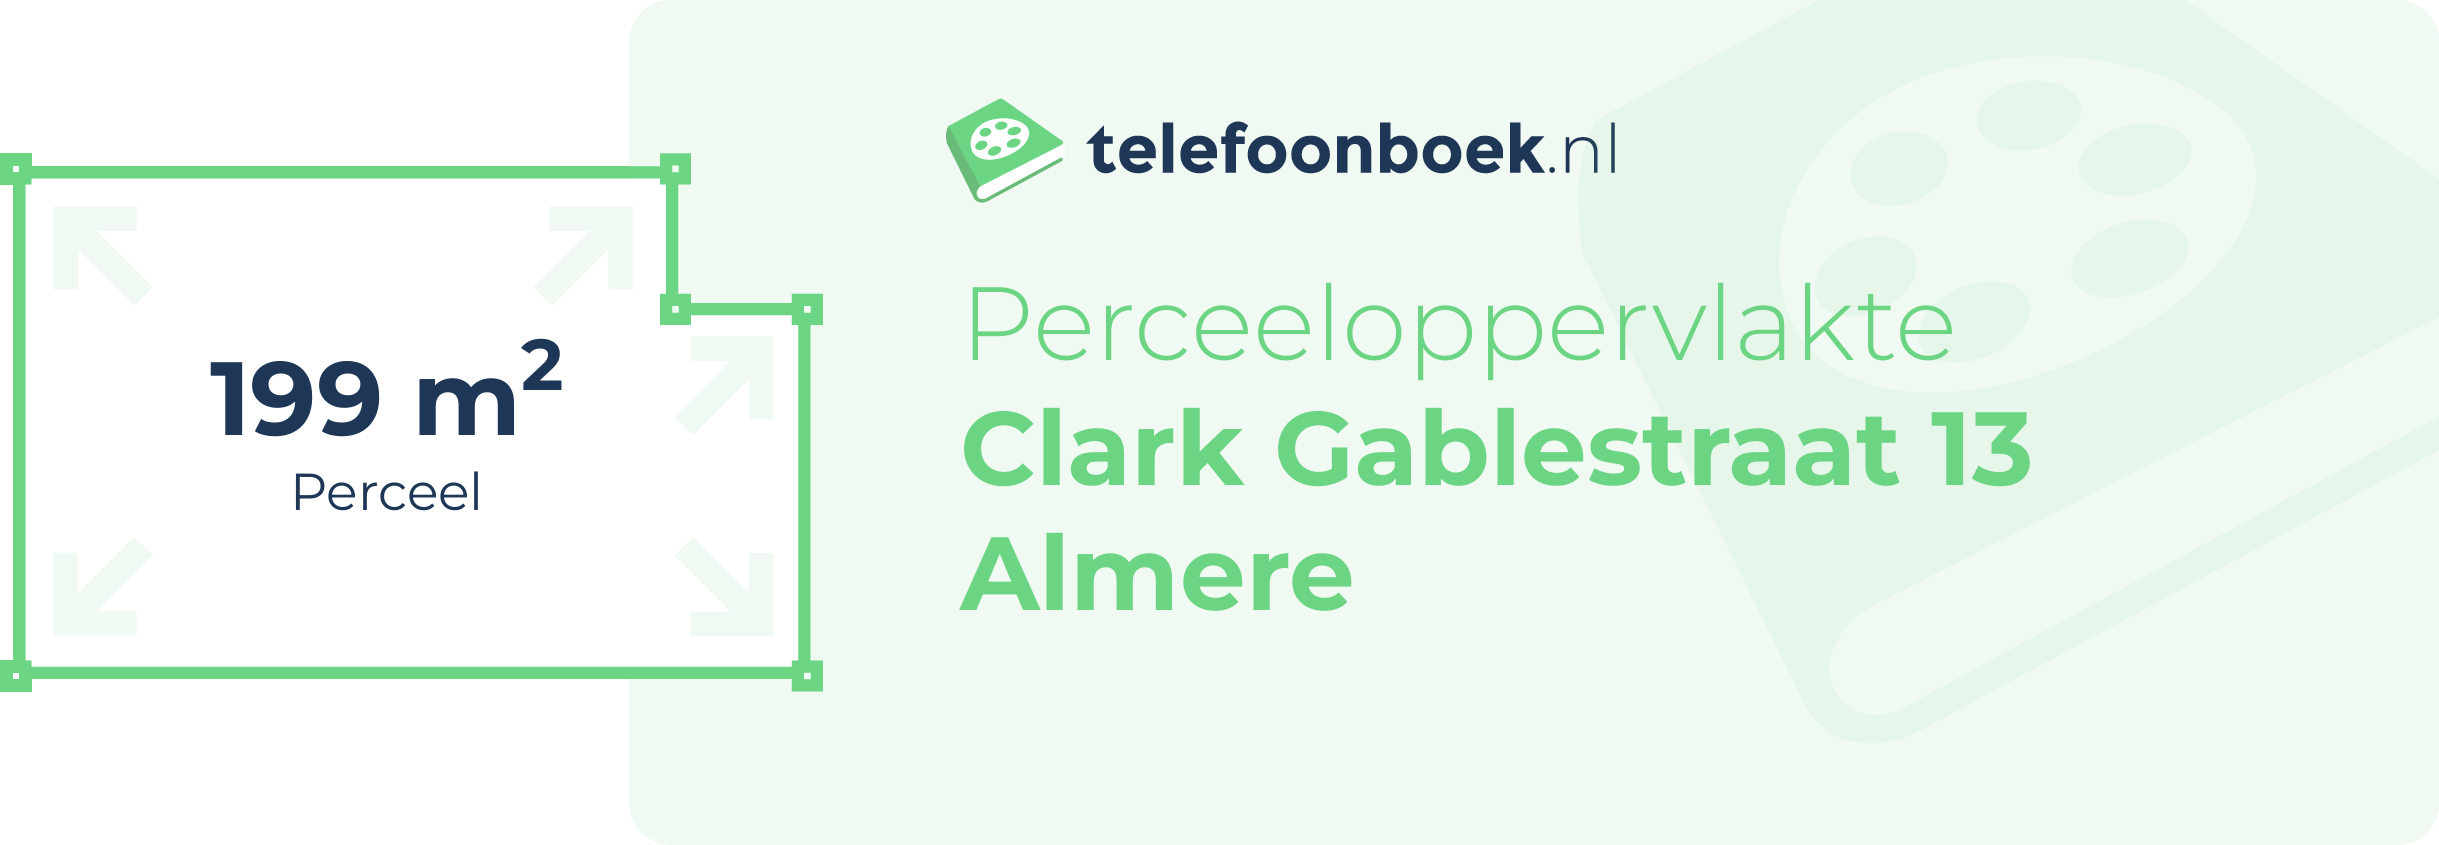 Perceeloppervlakte Clark Gablestraat 13 Almere